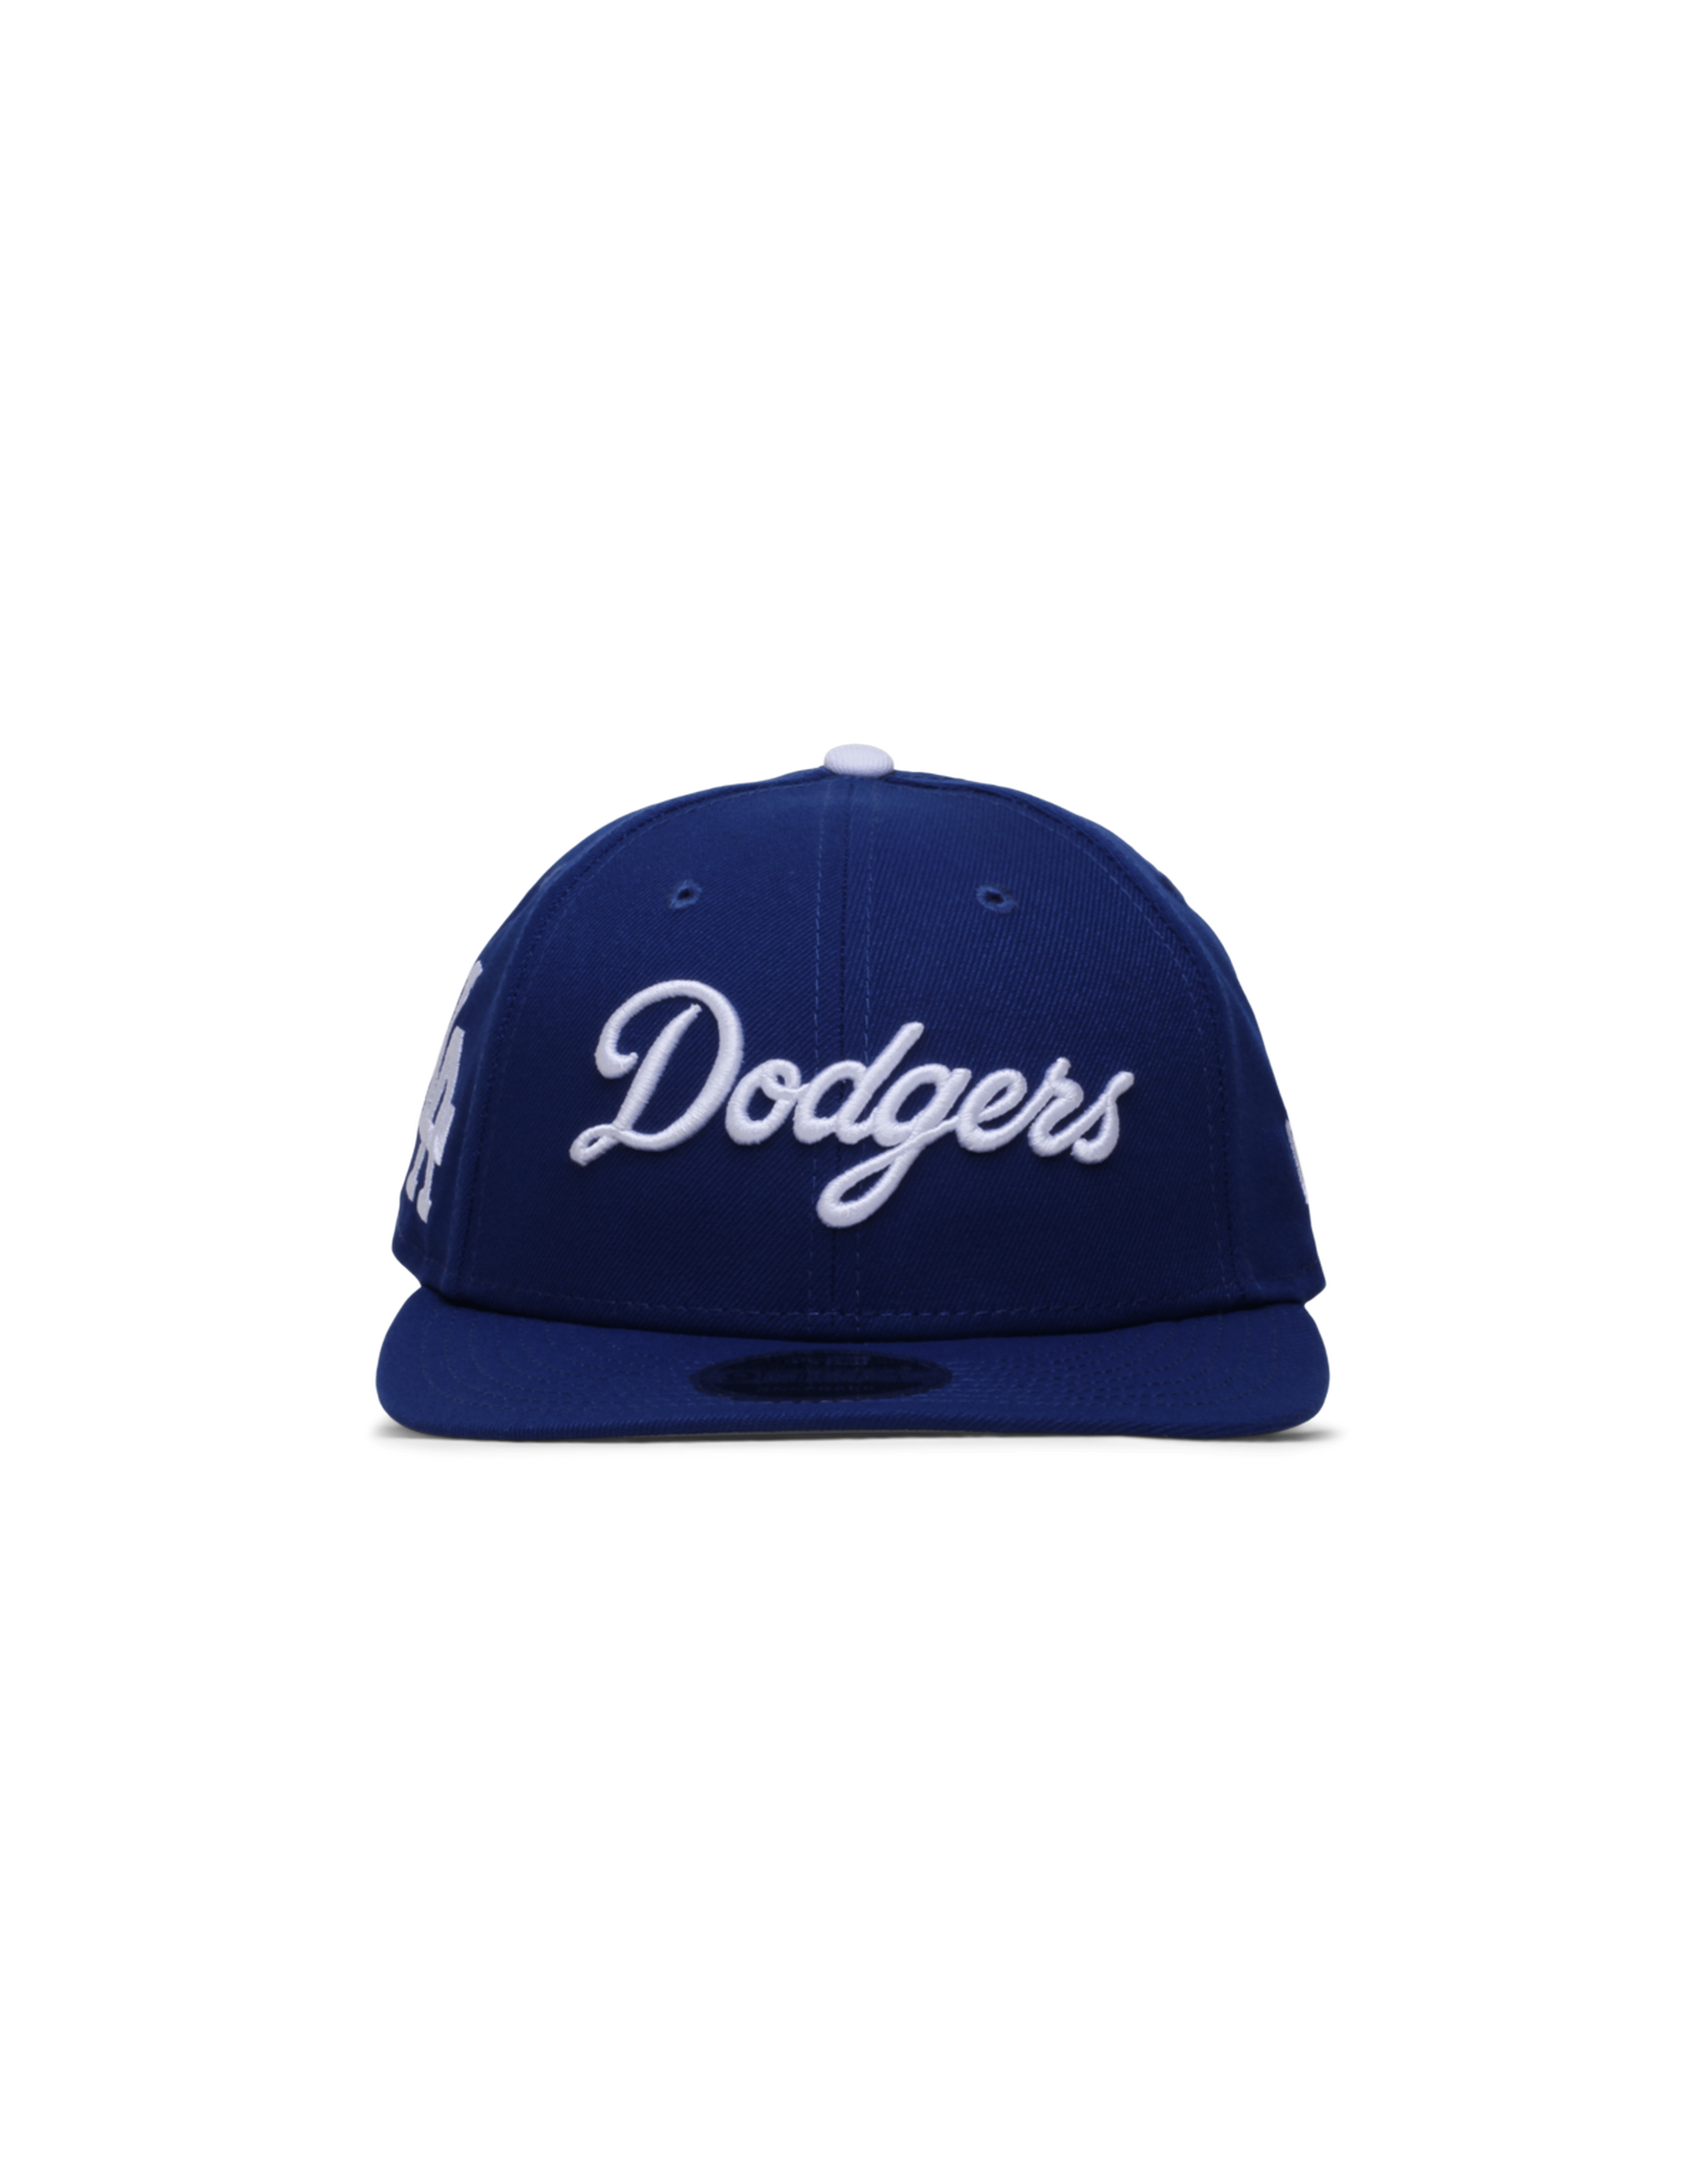 LA Dodgers x FELT 9FIFTY Snapback Cap